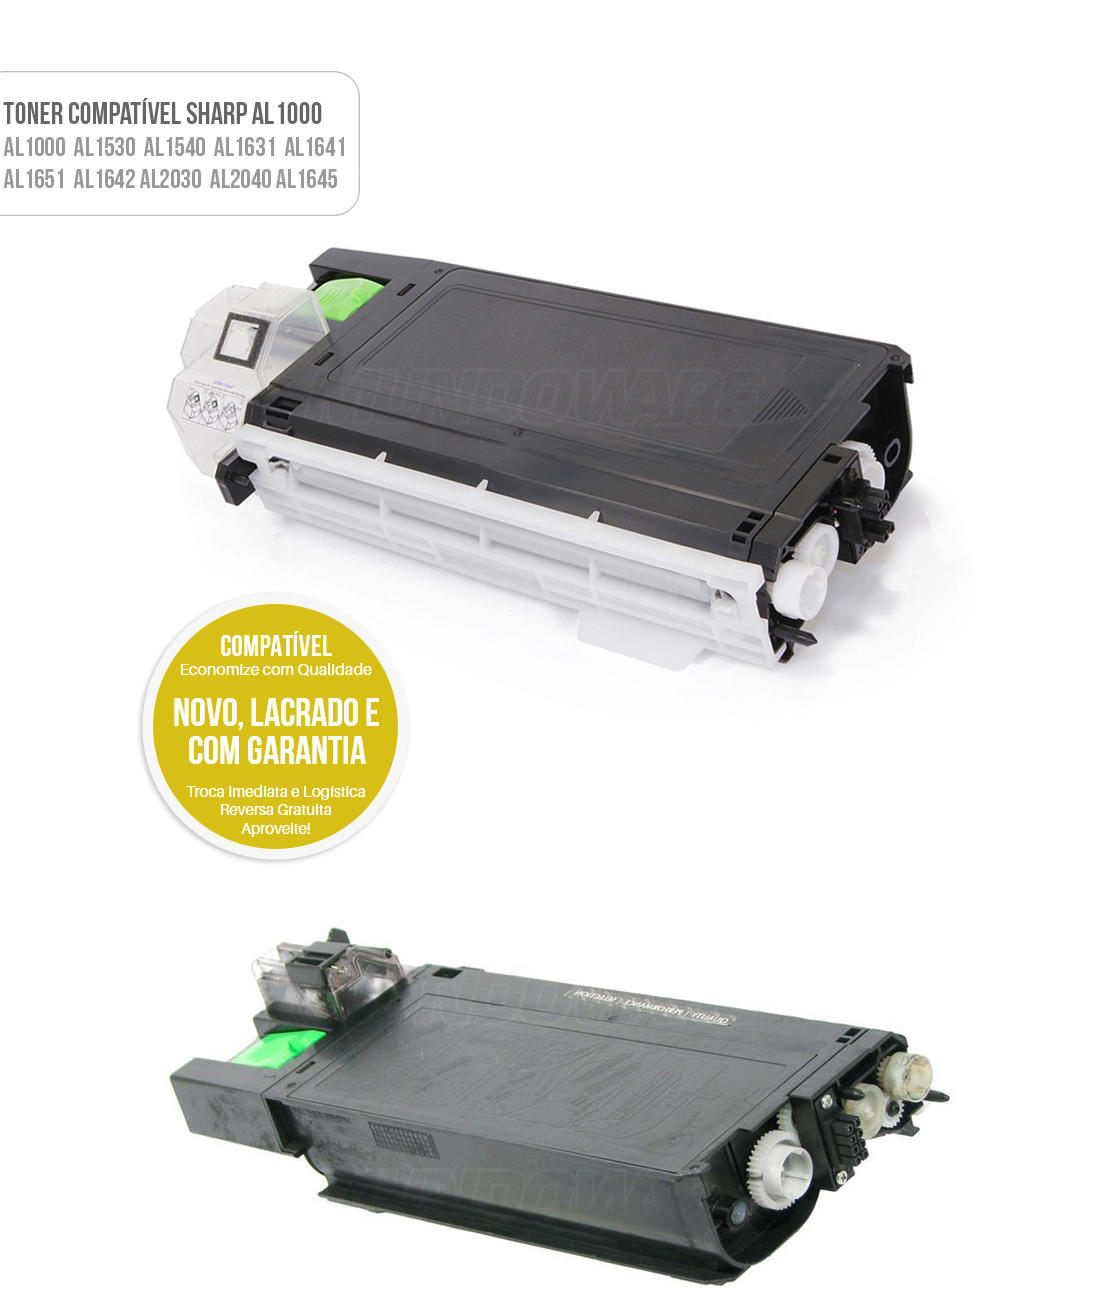 Toner Compatível AL-100TD para Impressora Sharp AL1000 AL2040 AL1645